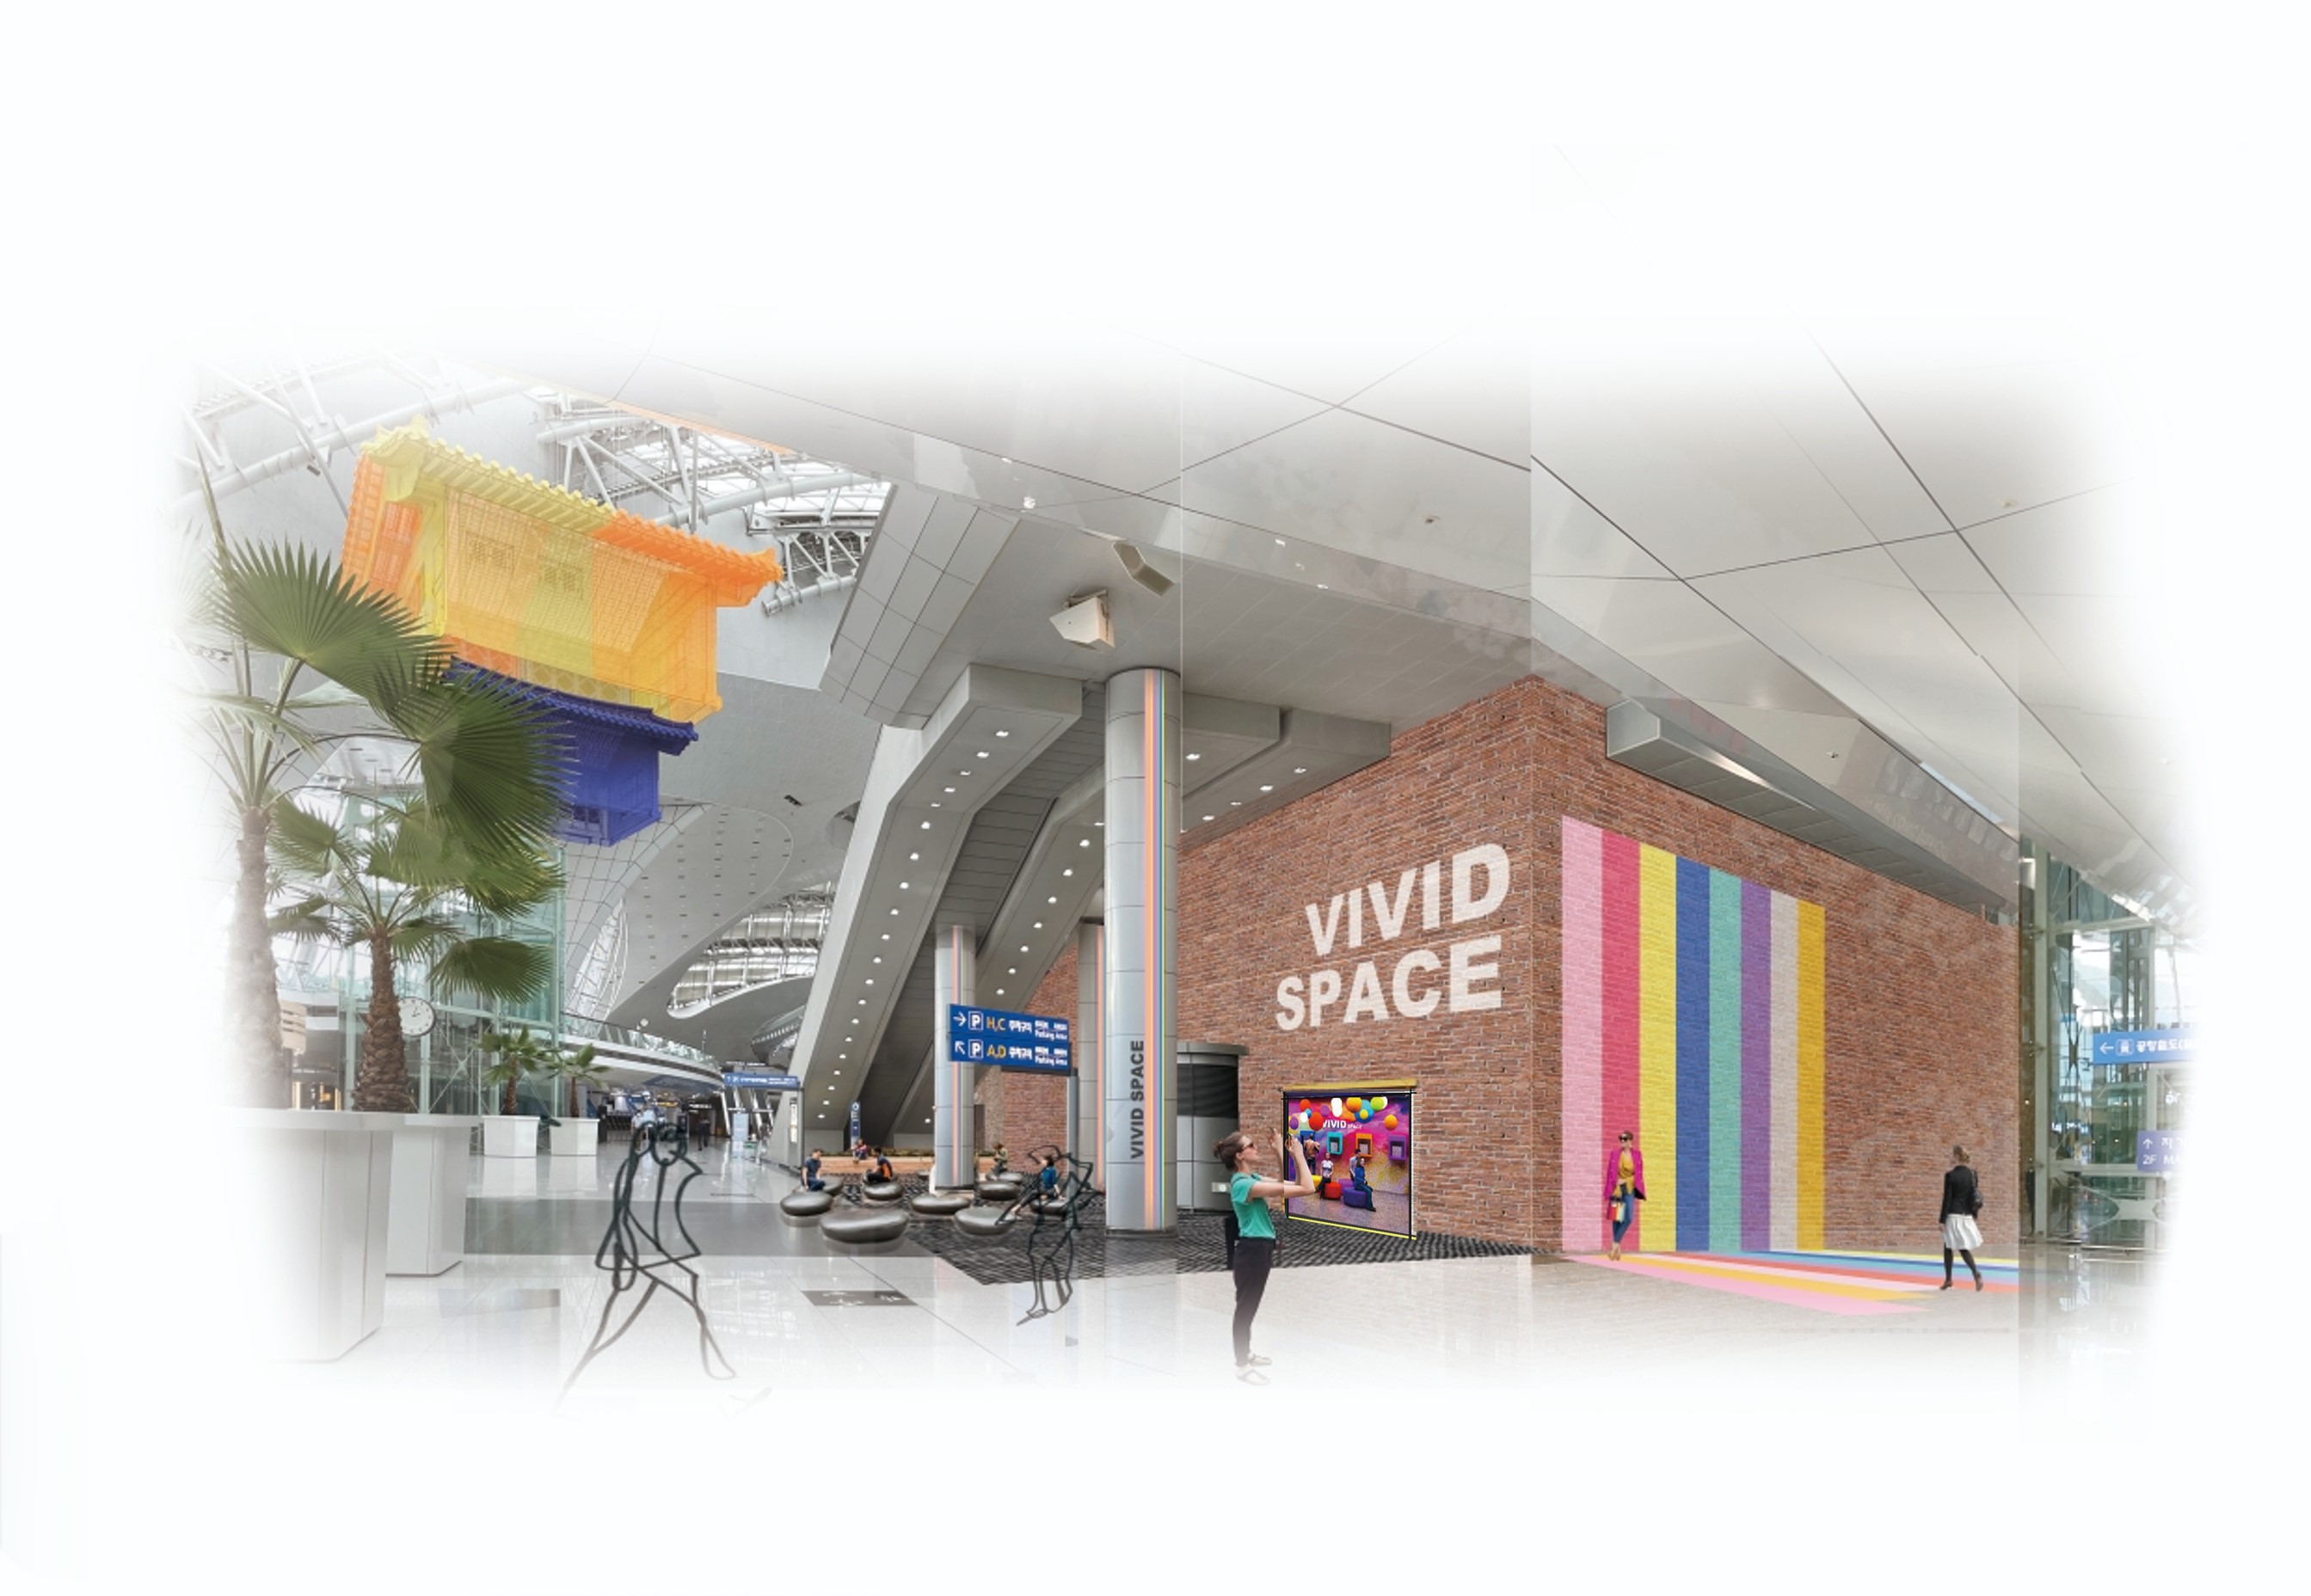 Vivid Space yang menampilkan konten teknologi baru terpadu dibuka di Bandara Incheon.